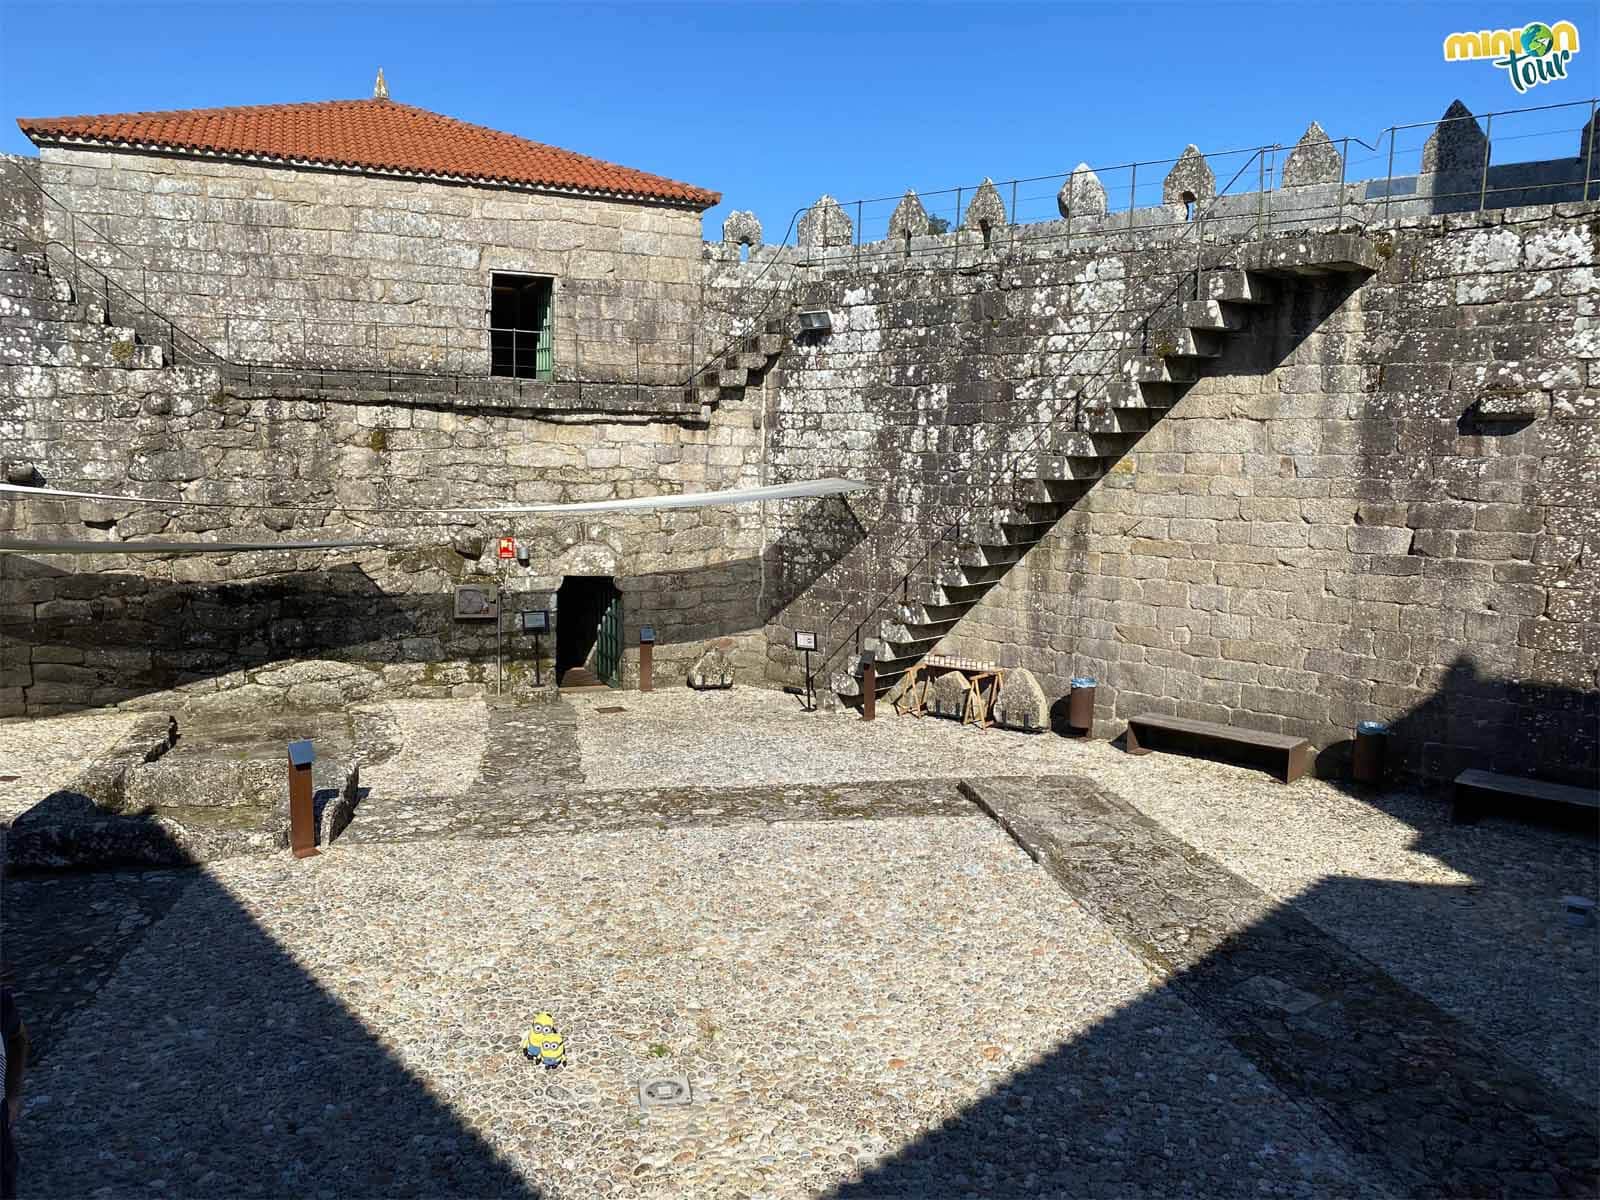 La historia del Castillo de Vimianzo es de lo más curiosa